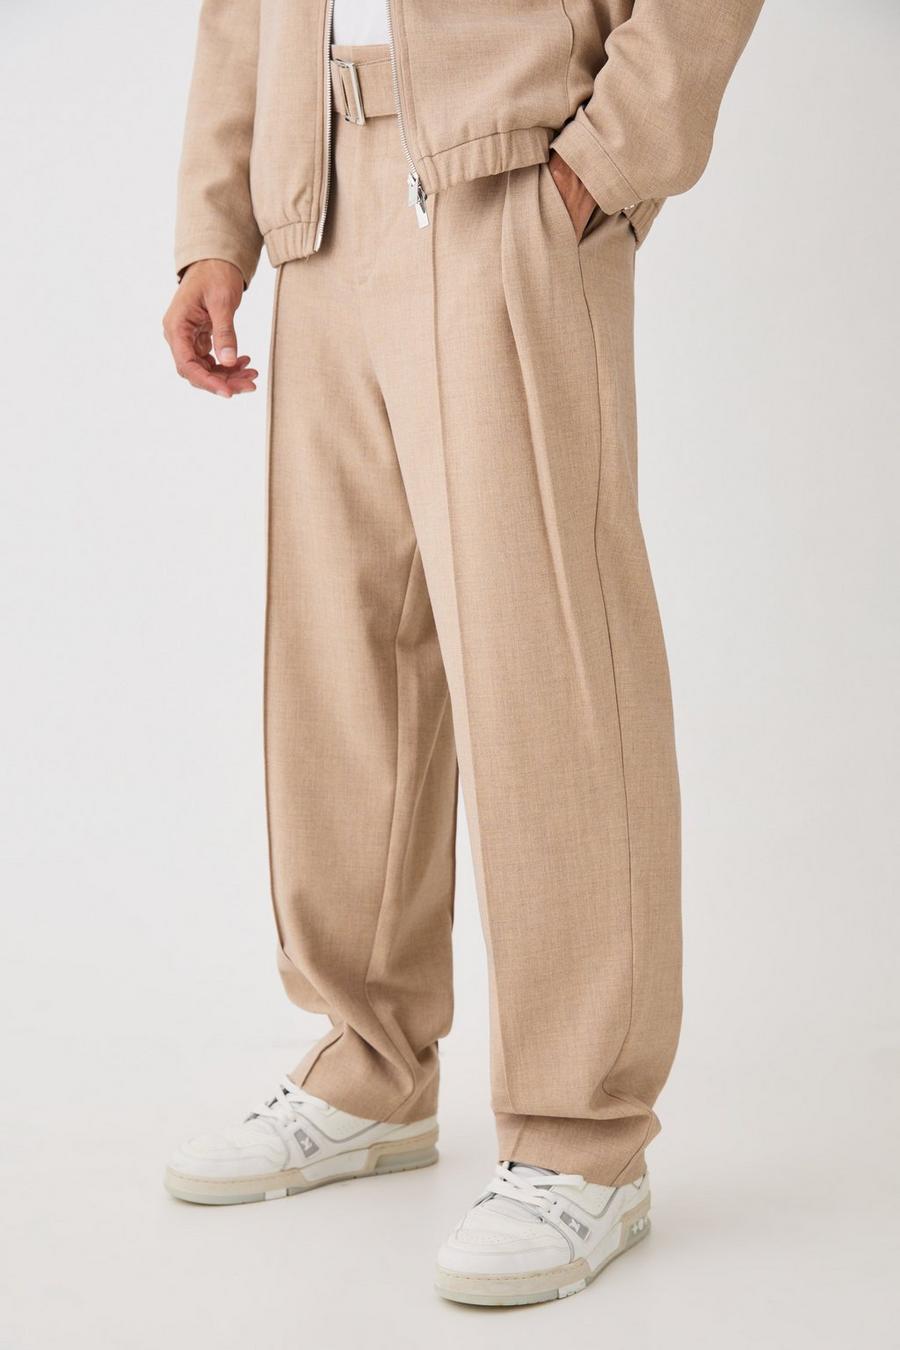 Pantalón texturizado entallado holgado con cinturón, Taupe